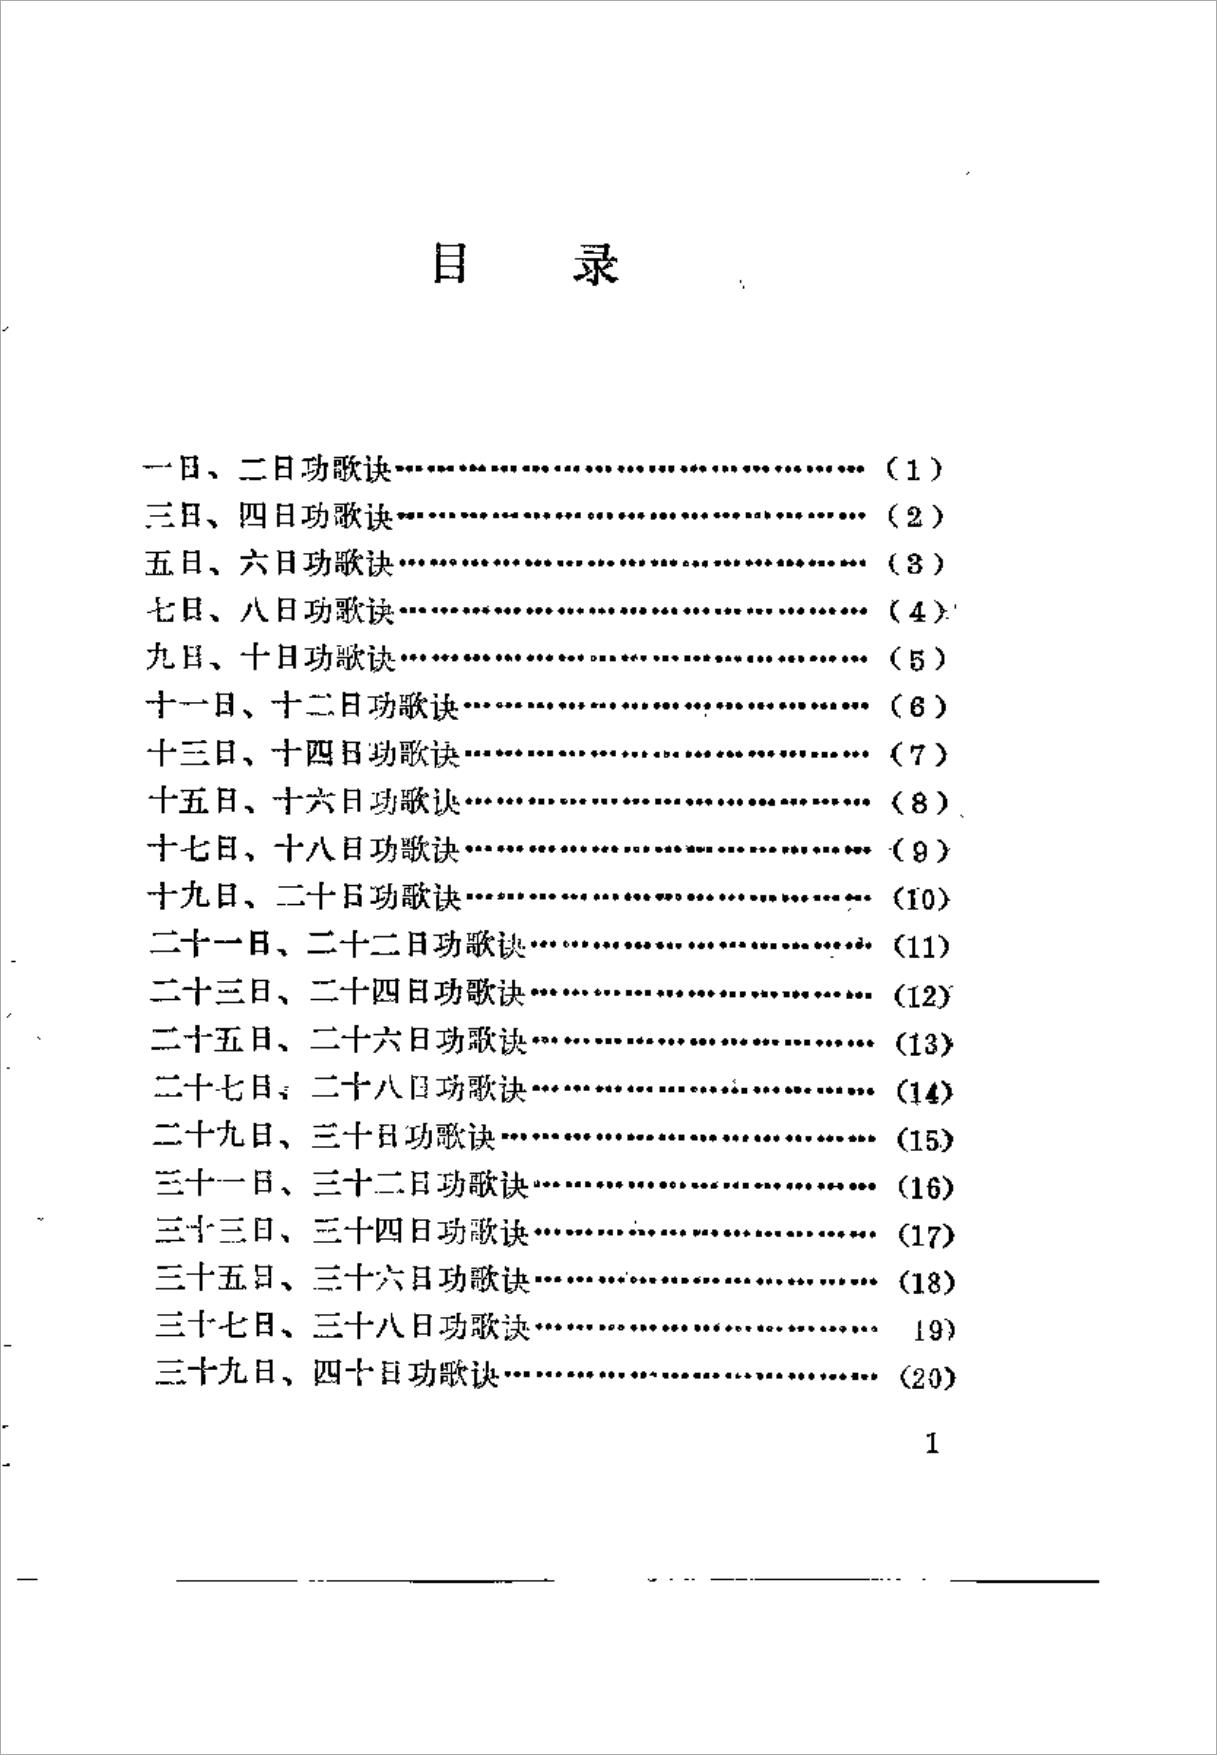 应时通灵歌（隆影）234页.pdf